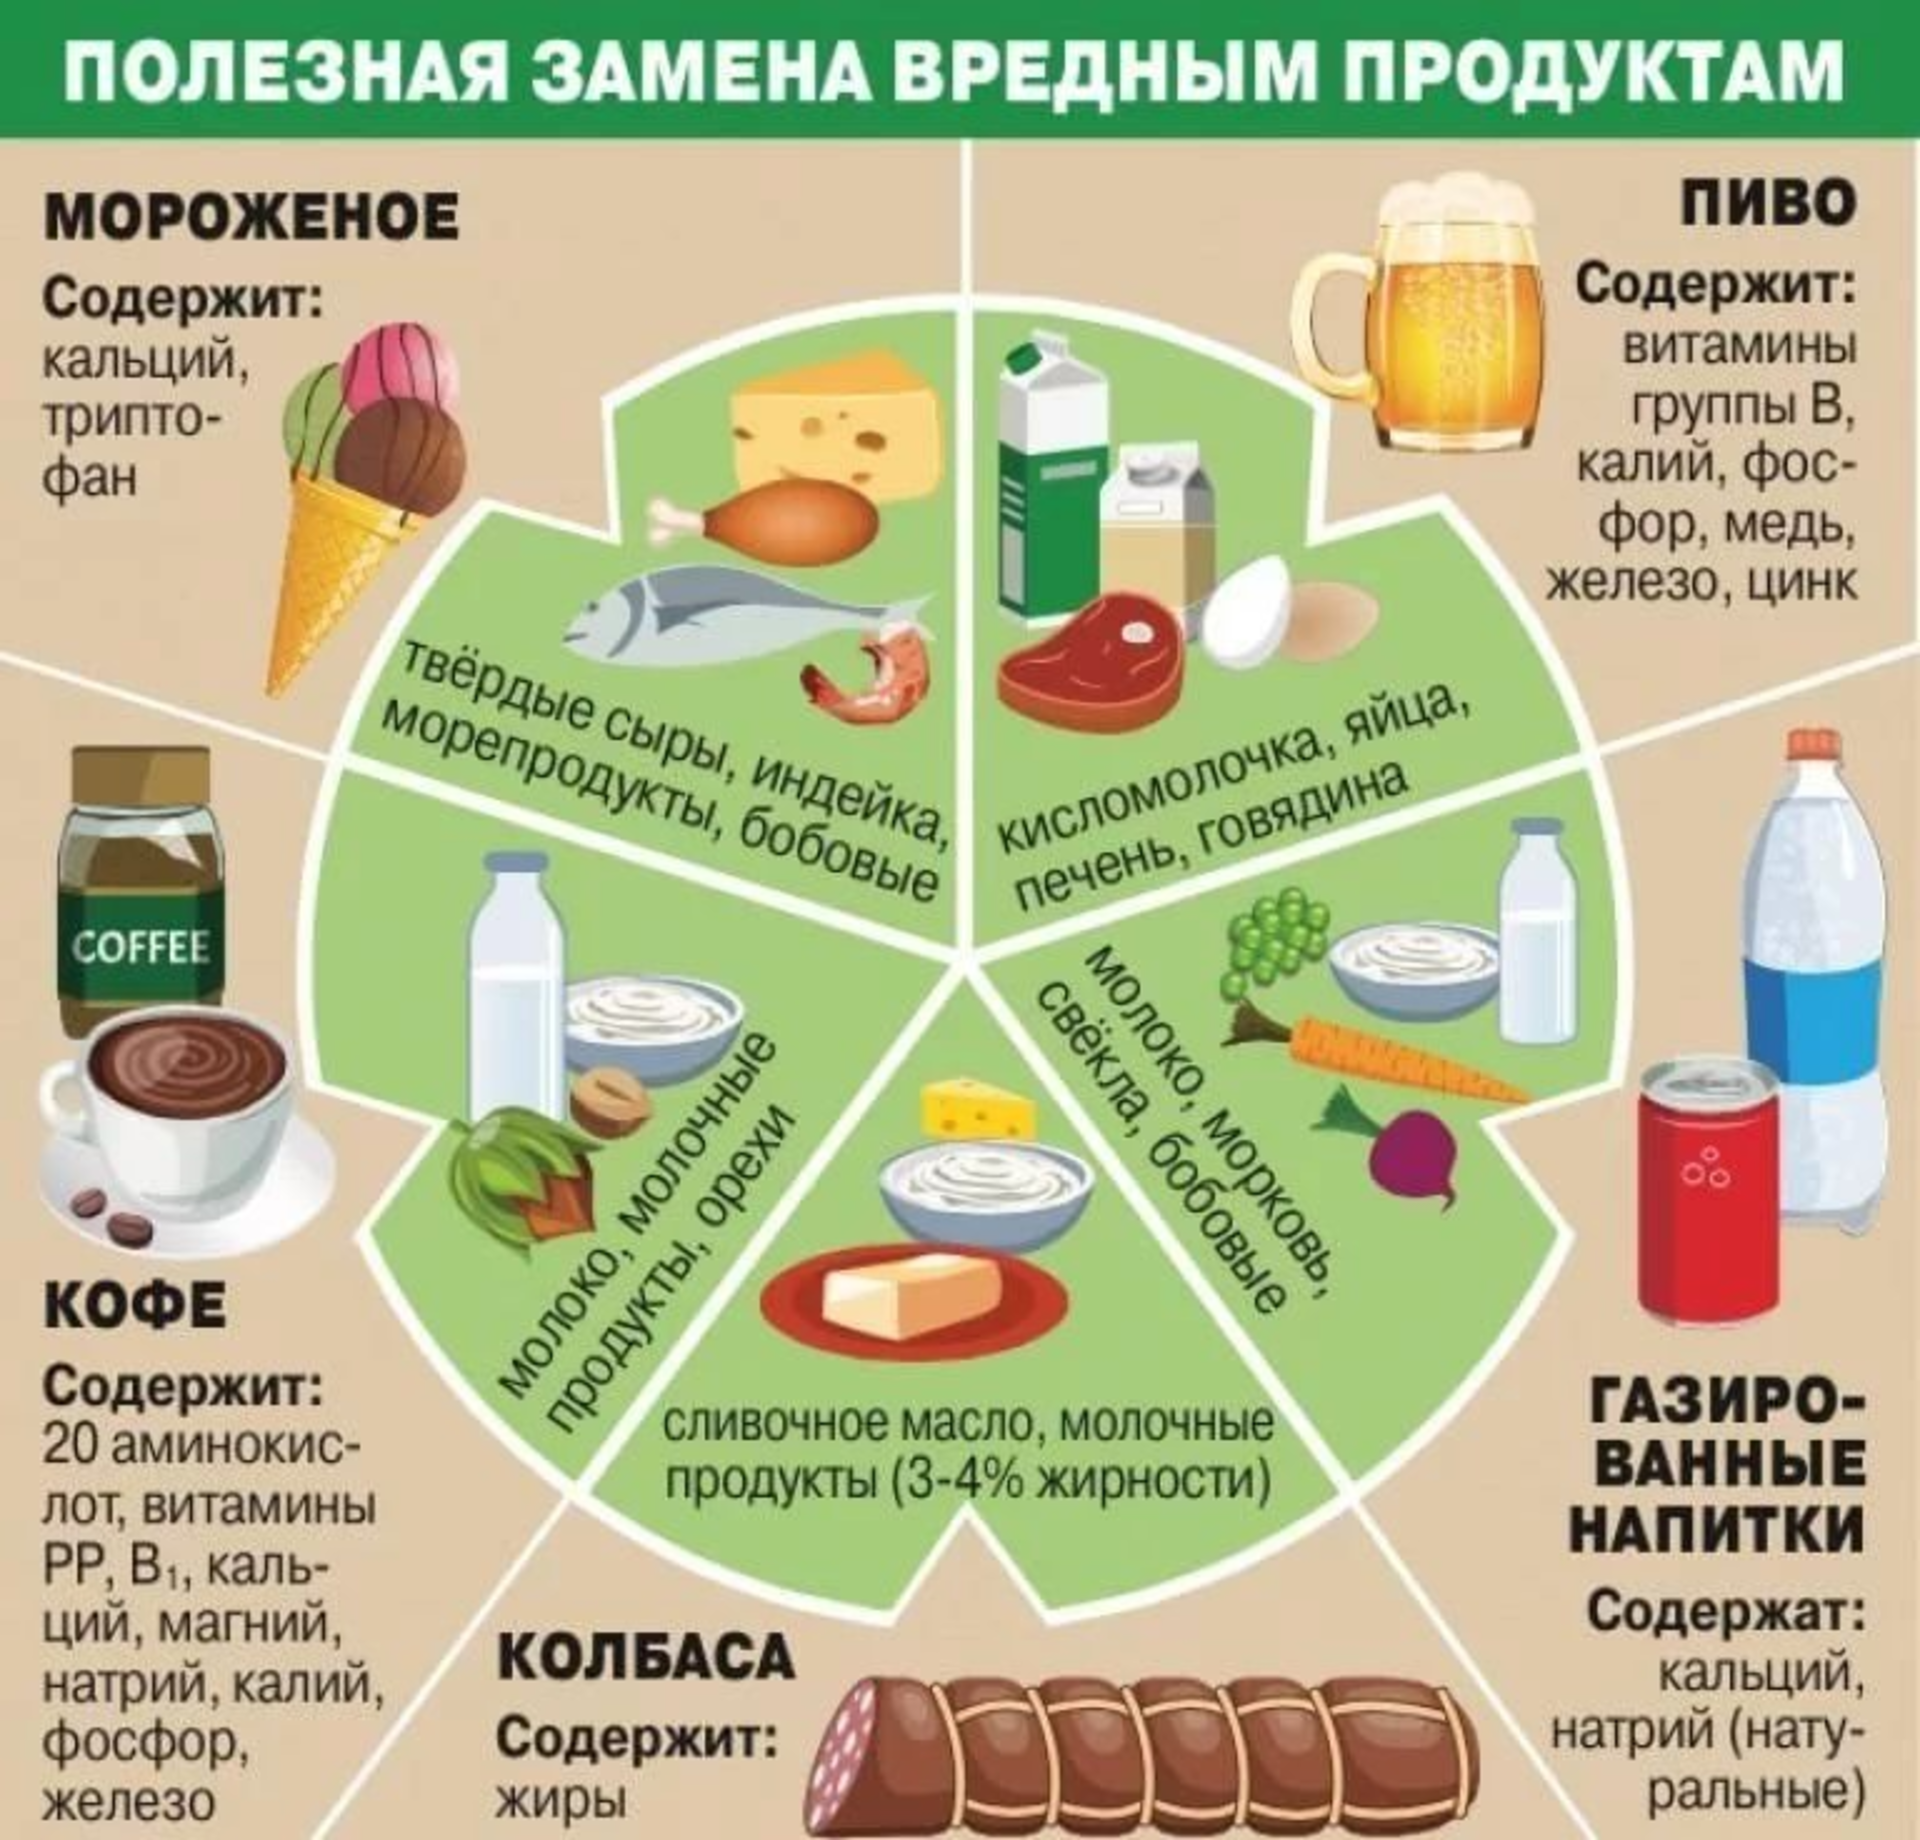 Продукты и т д суть. Таблица полезных продуктов питания. Замена вредных продуктов на полезные. Заменяем вредные продукты на полезные. Таблица правильного питания.